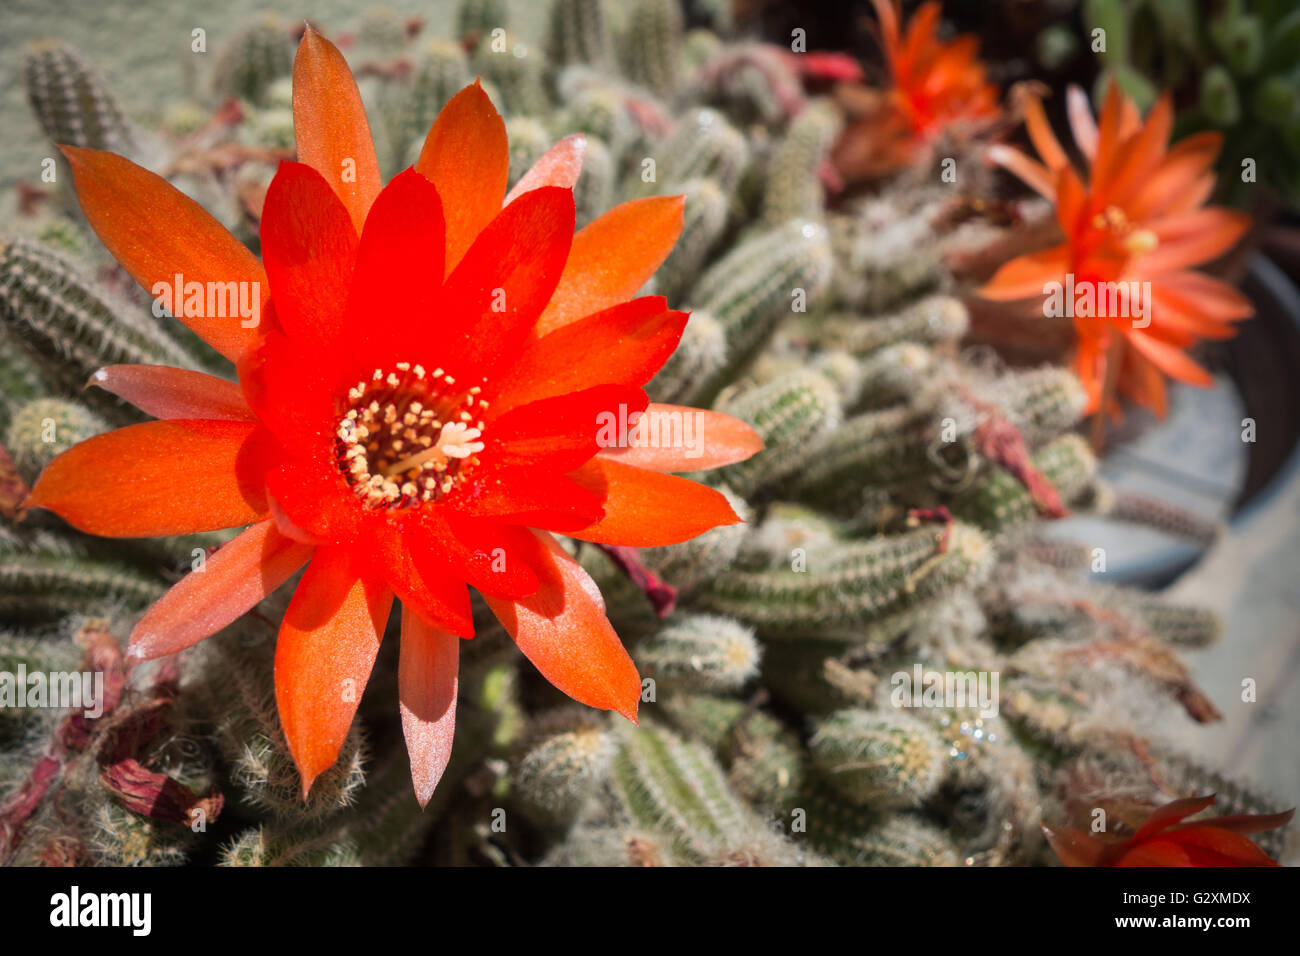 Orange flower of Aporocactus flagelliformis cactus Stock Photo